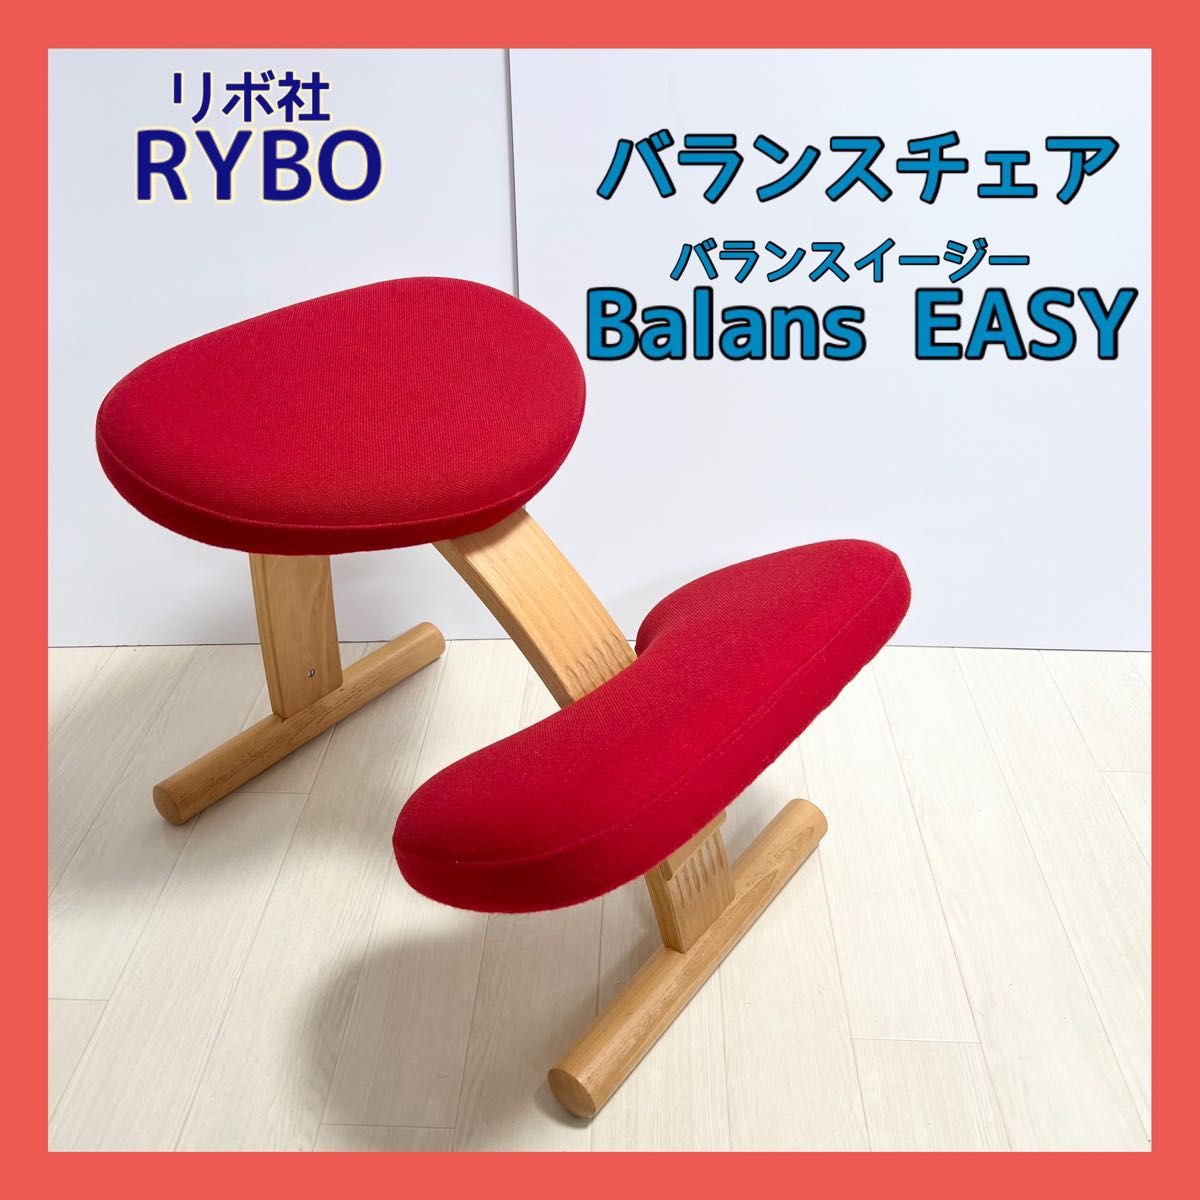 バランスチェア Balans EASY バランスイージー Rybo社-